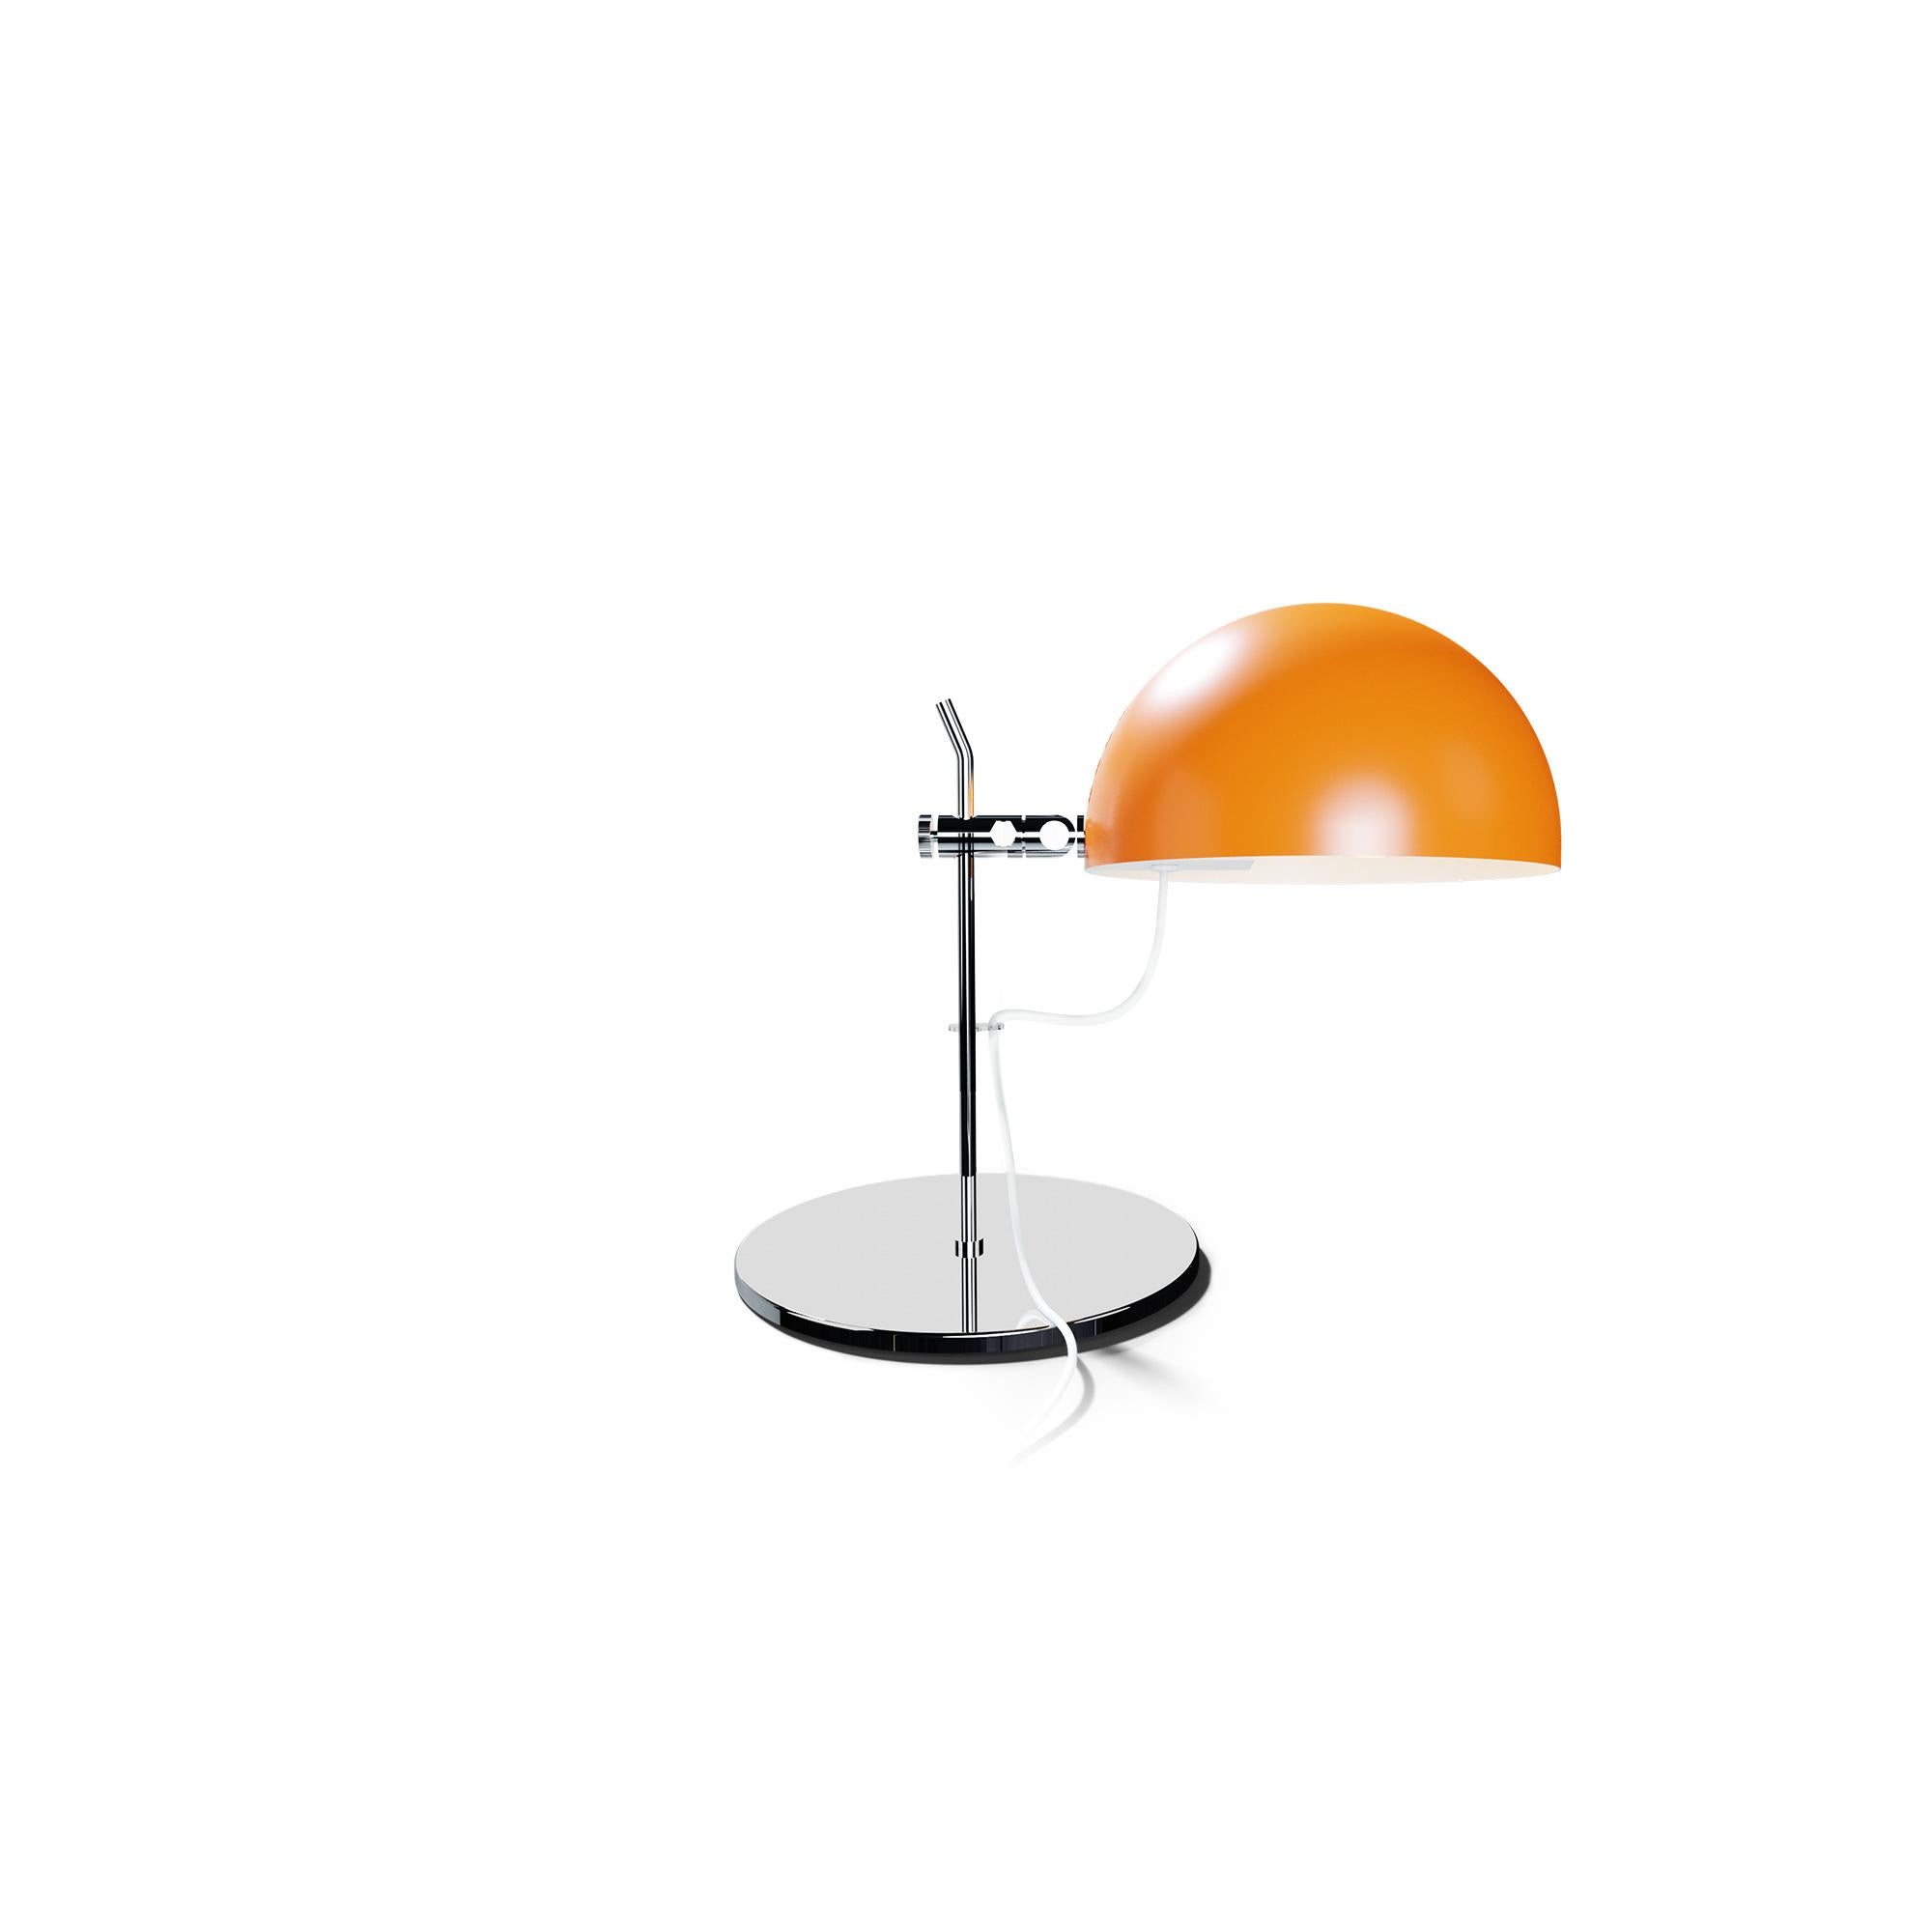 Alain Richard 'A22' Desk Lamp in White for Disderot For Sale 2